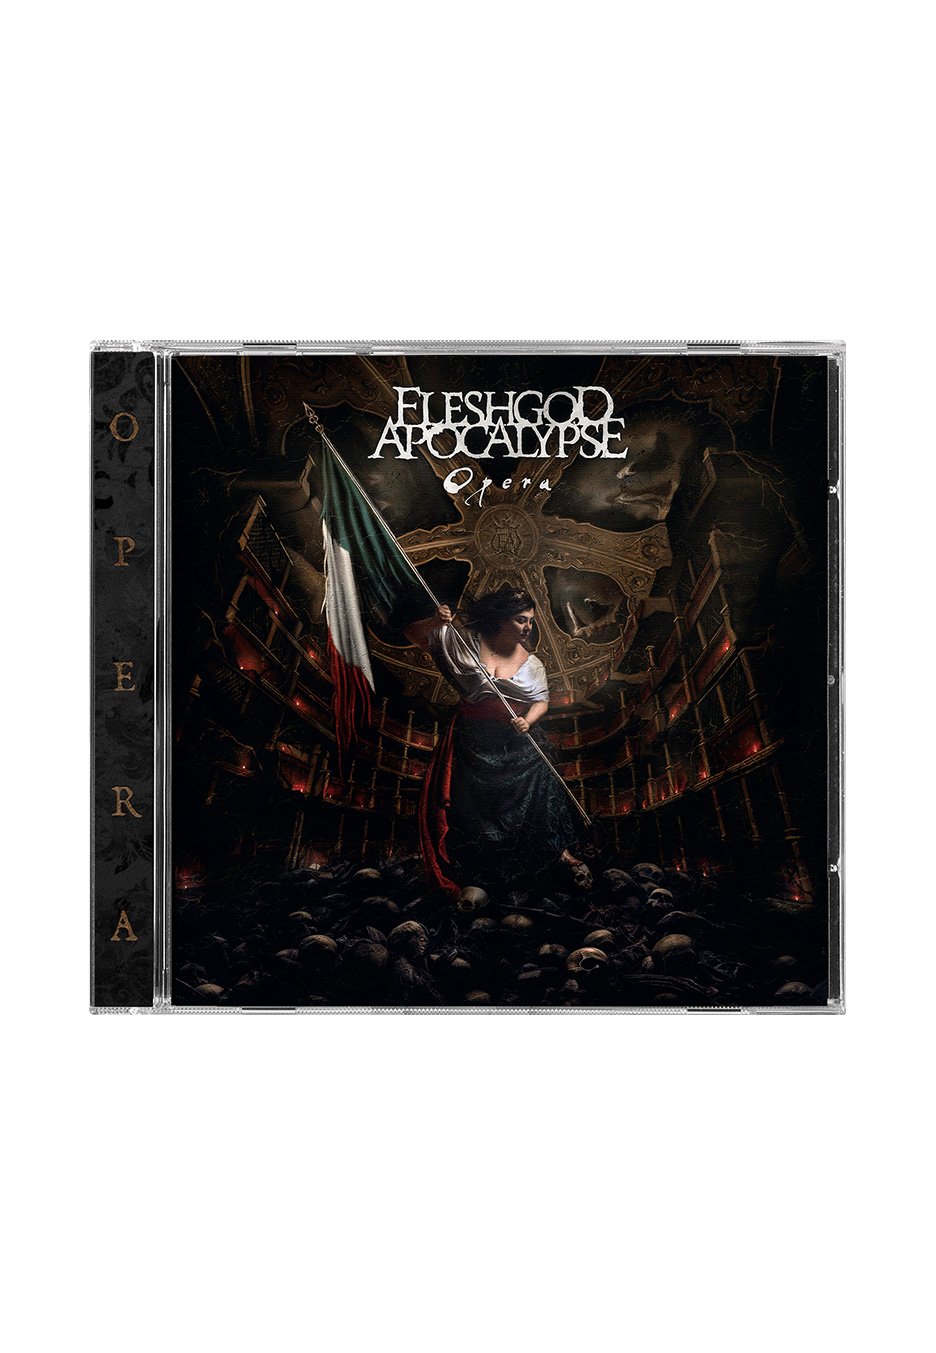 Fleshgod Apocalypse - Opera - CD | Neutral-Image